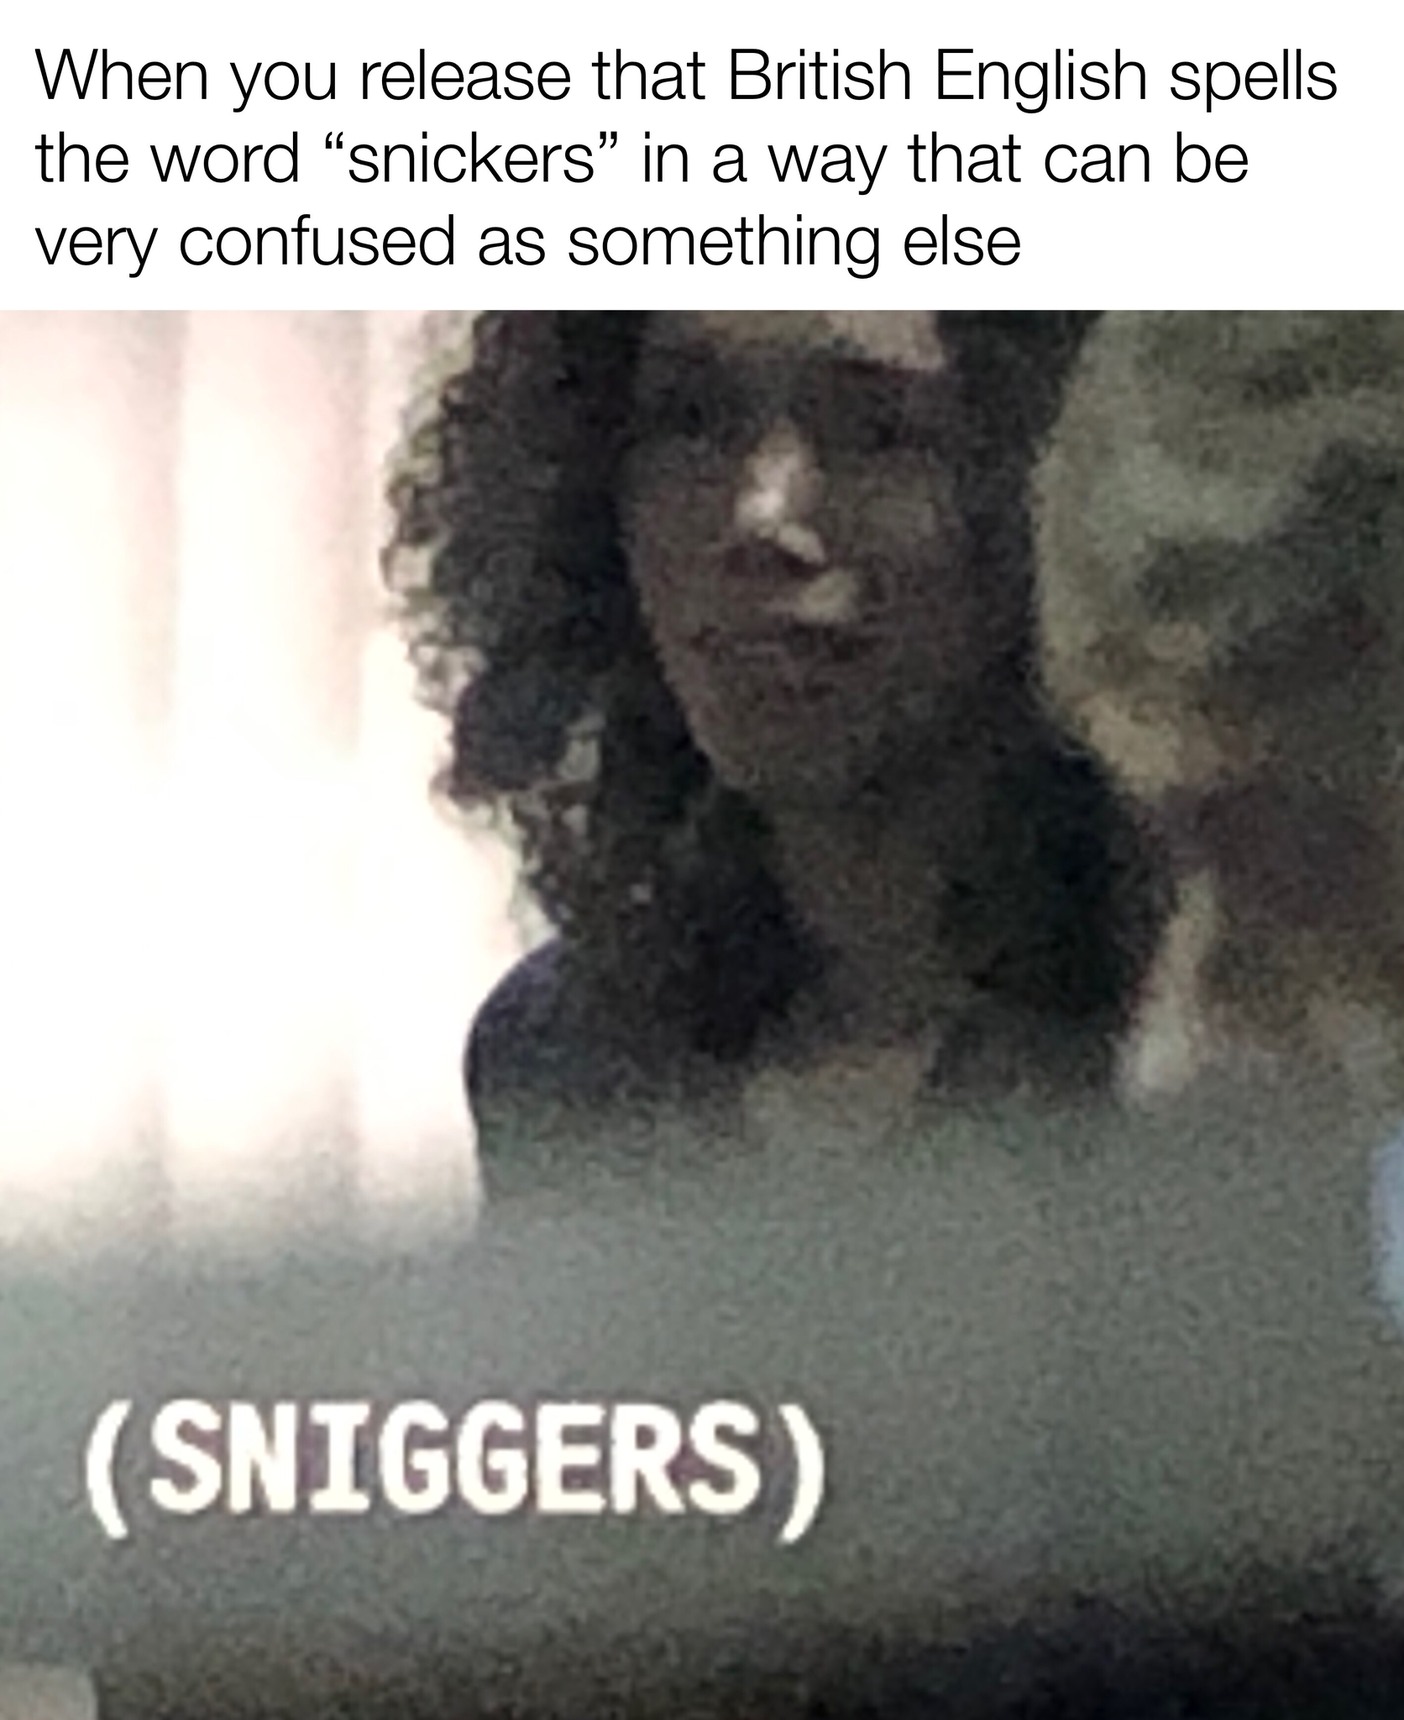 (sniggers) - meme